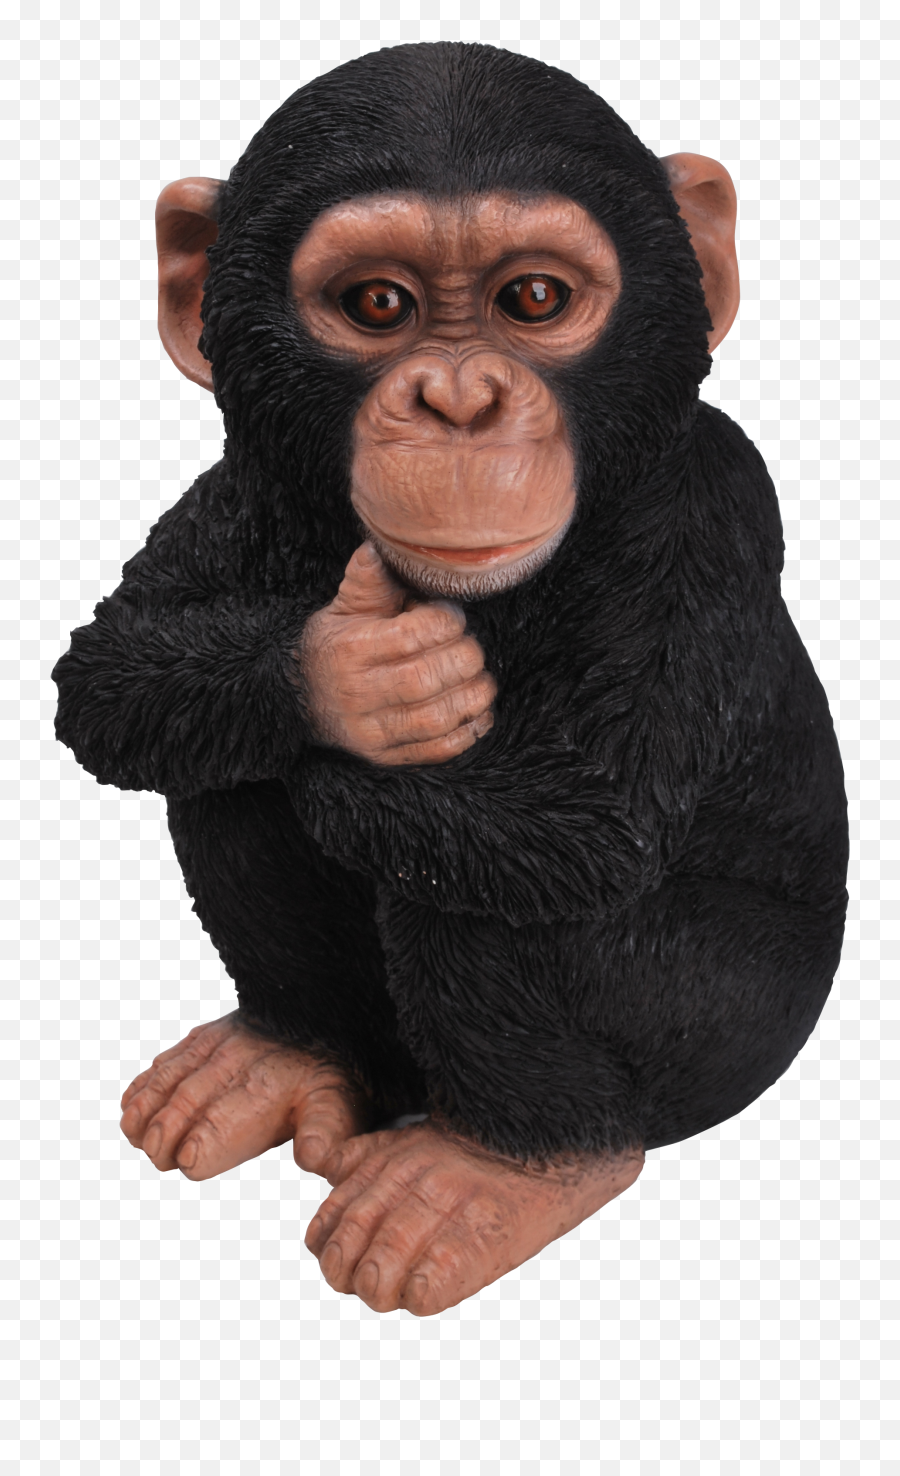 Download Rl Baby Chimpanzee F - Real Chimpanzee Png,Chimp Png